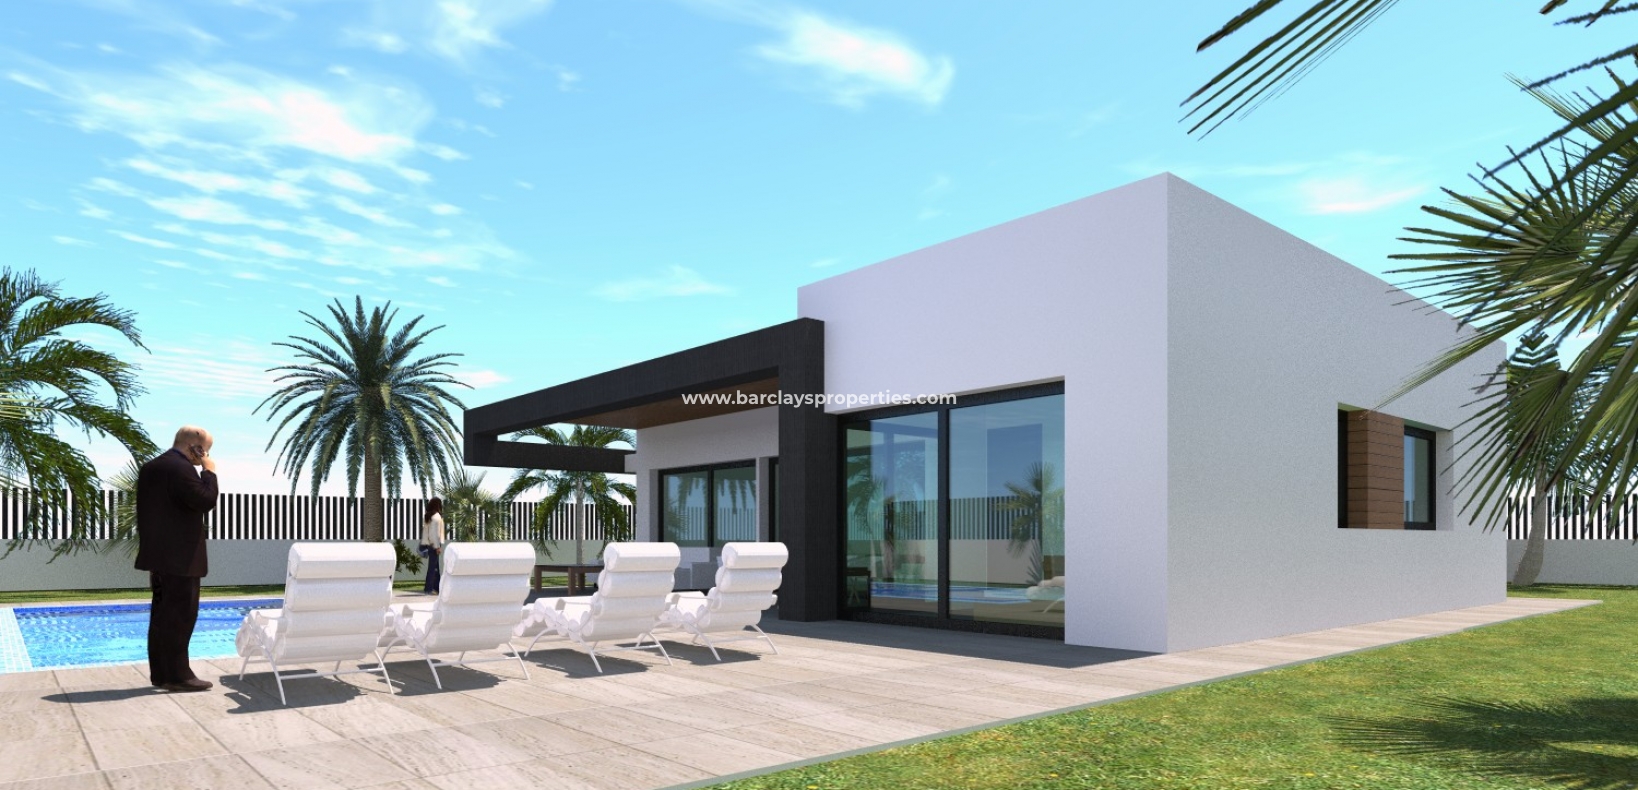 House View 3 - Groot perceel op het westen te koop in La Marina